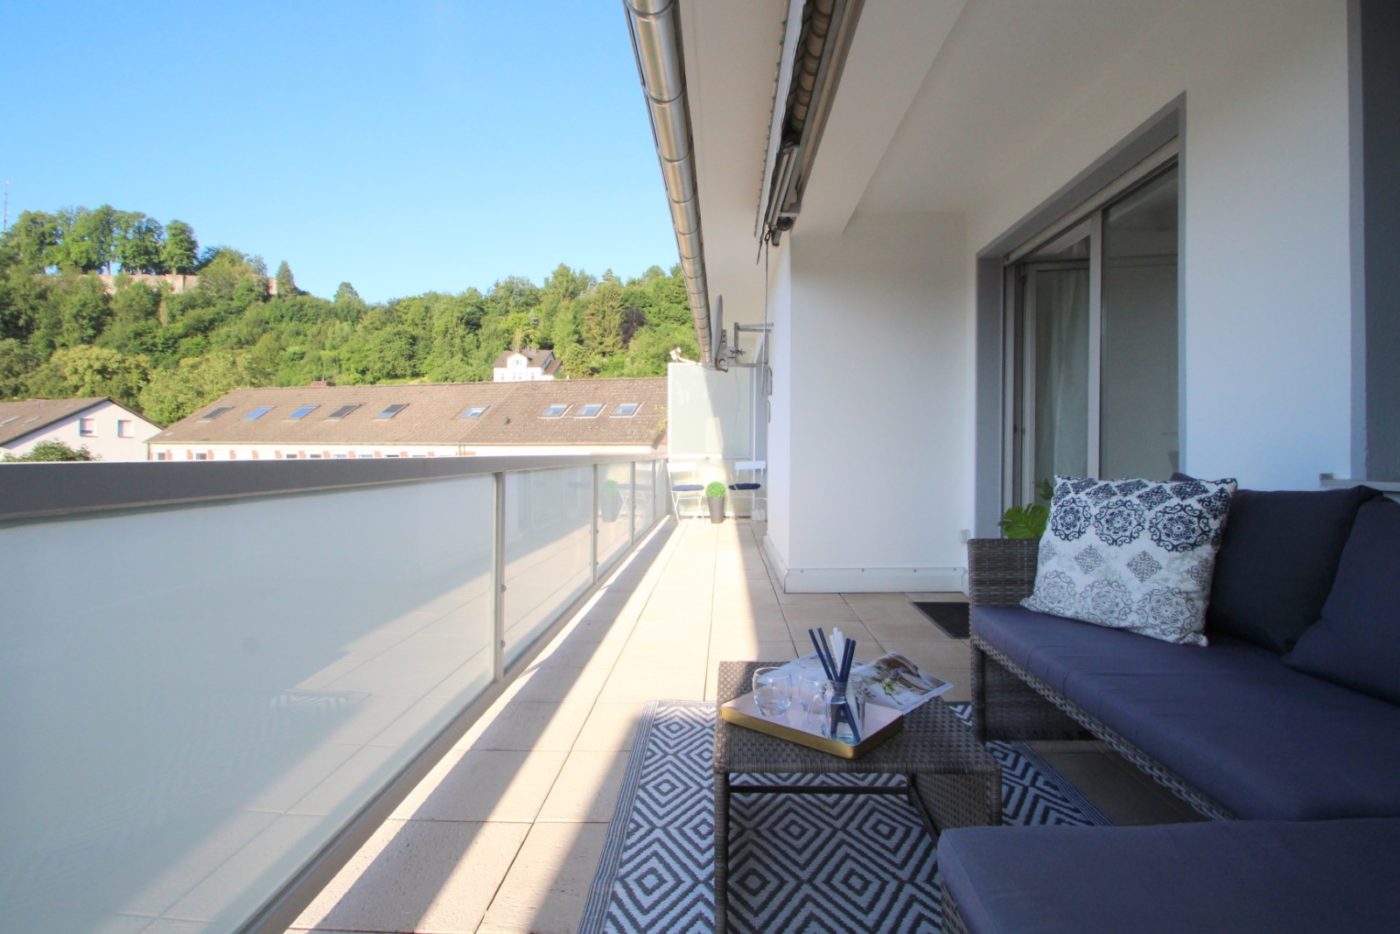 Balkon nach dem Homestaging durch Nicole Biernath von Blickfang Homestaging in Soest